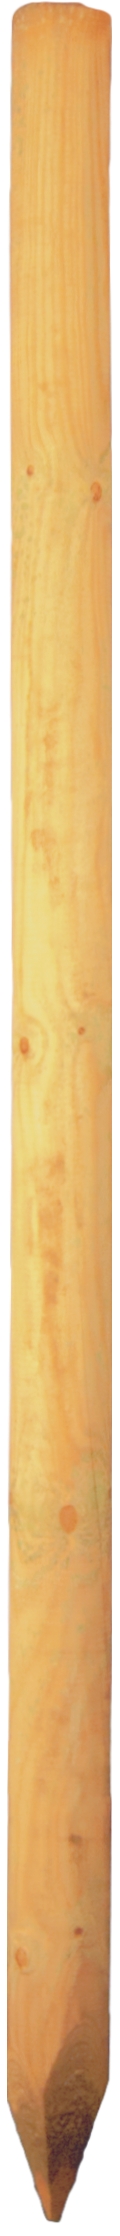 Baumpfahl grün 8 x 125 cm gefräst, gefast, gespitzt